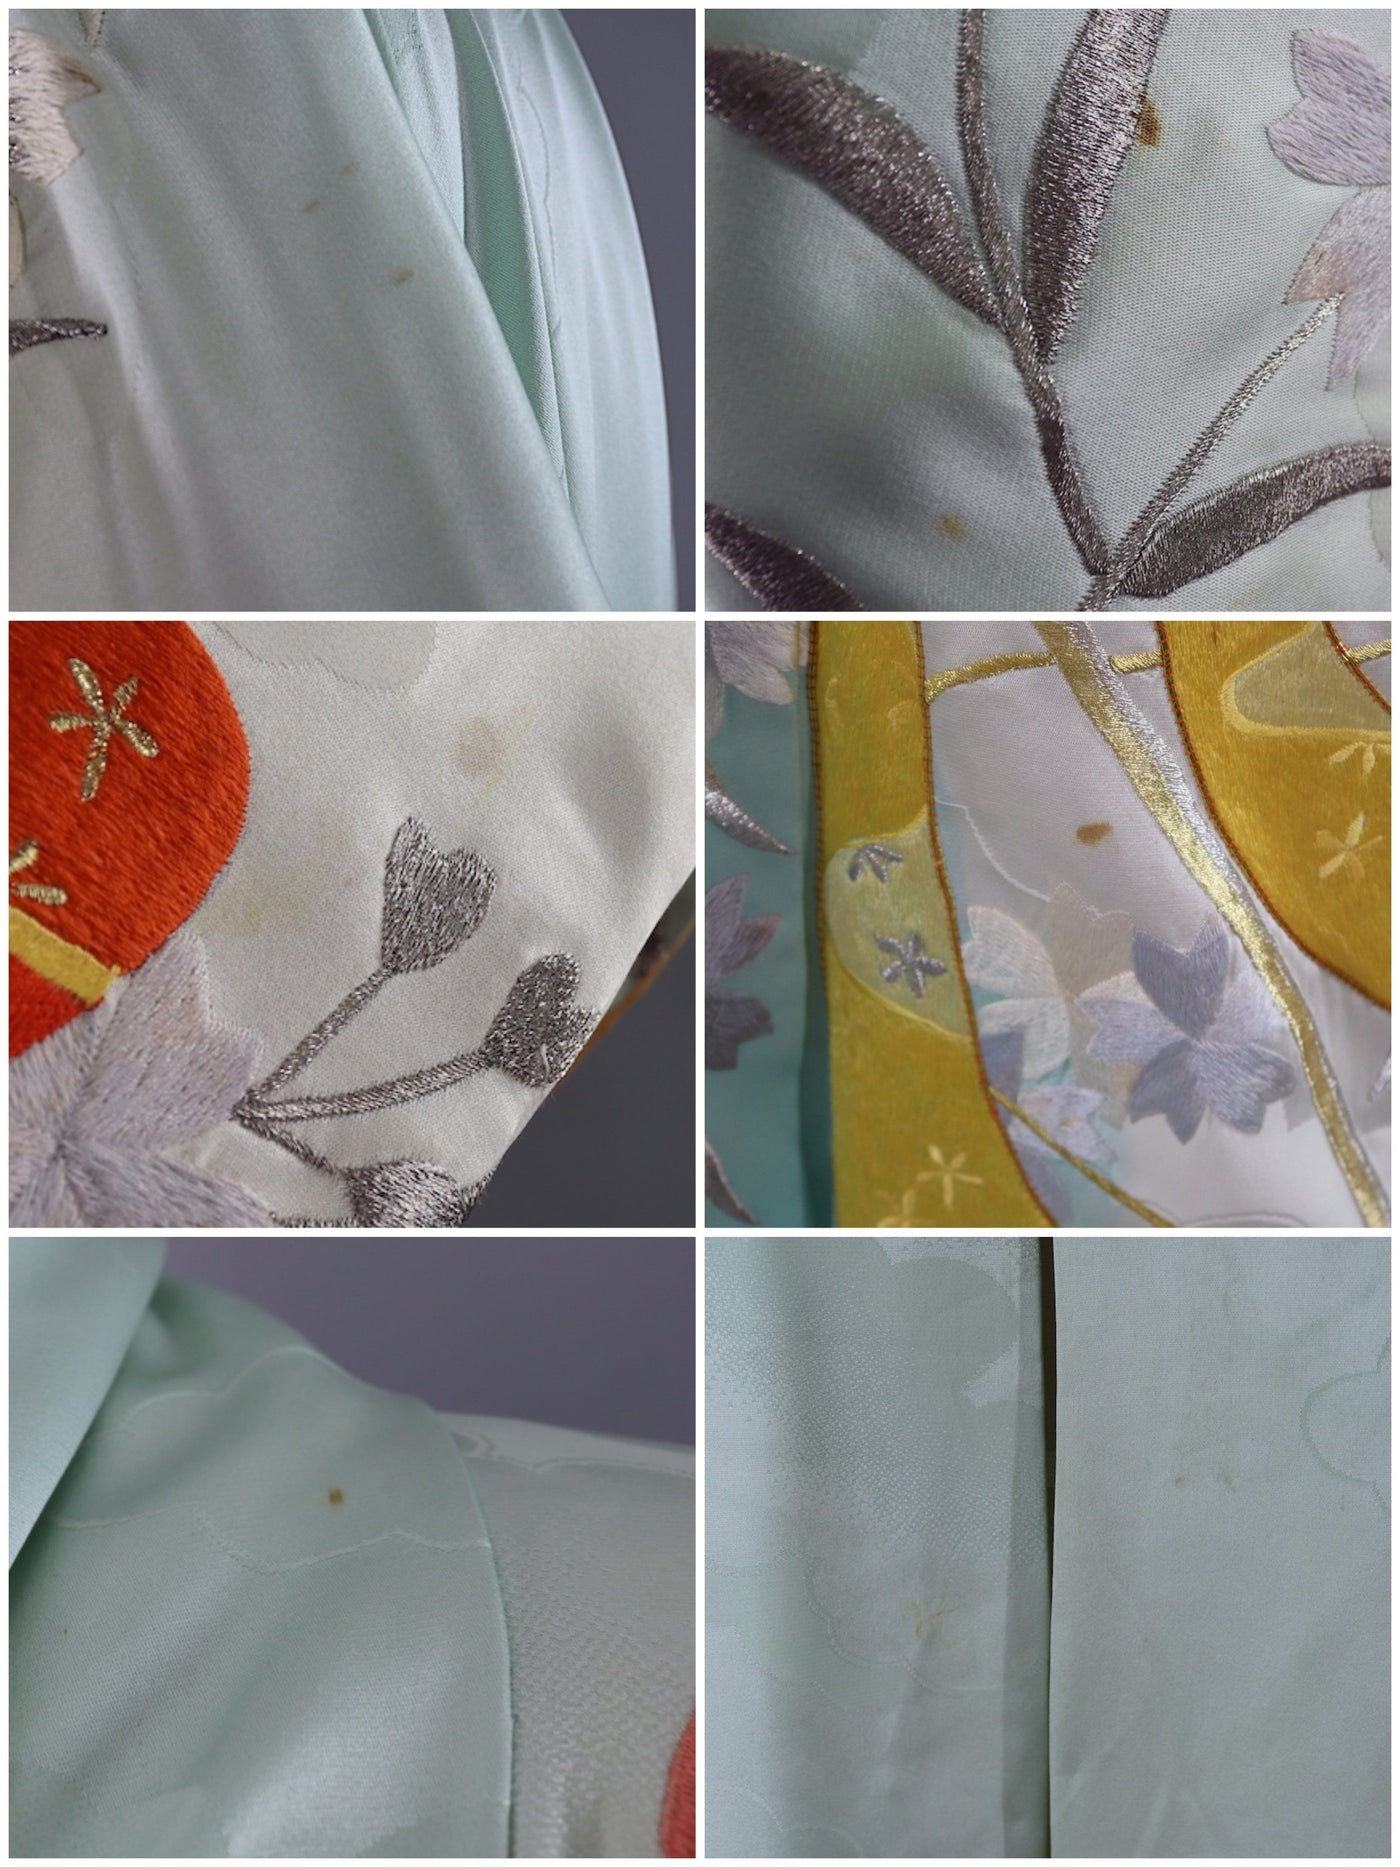 Vintage Silk Kimono Robe / Aqua Blue Satin Embroidery - ThisBlueBird